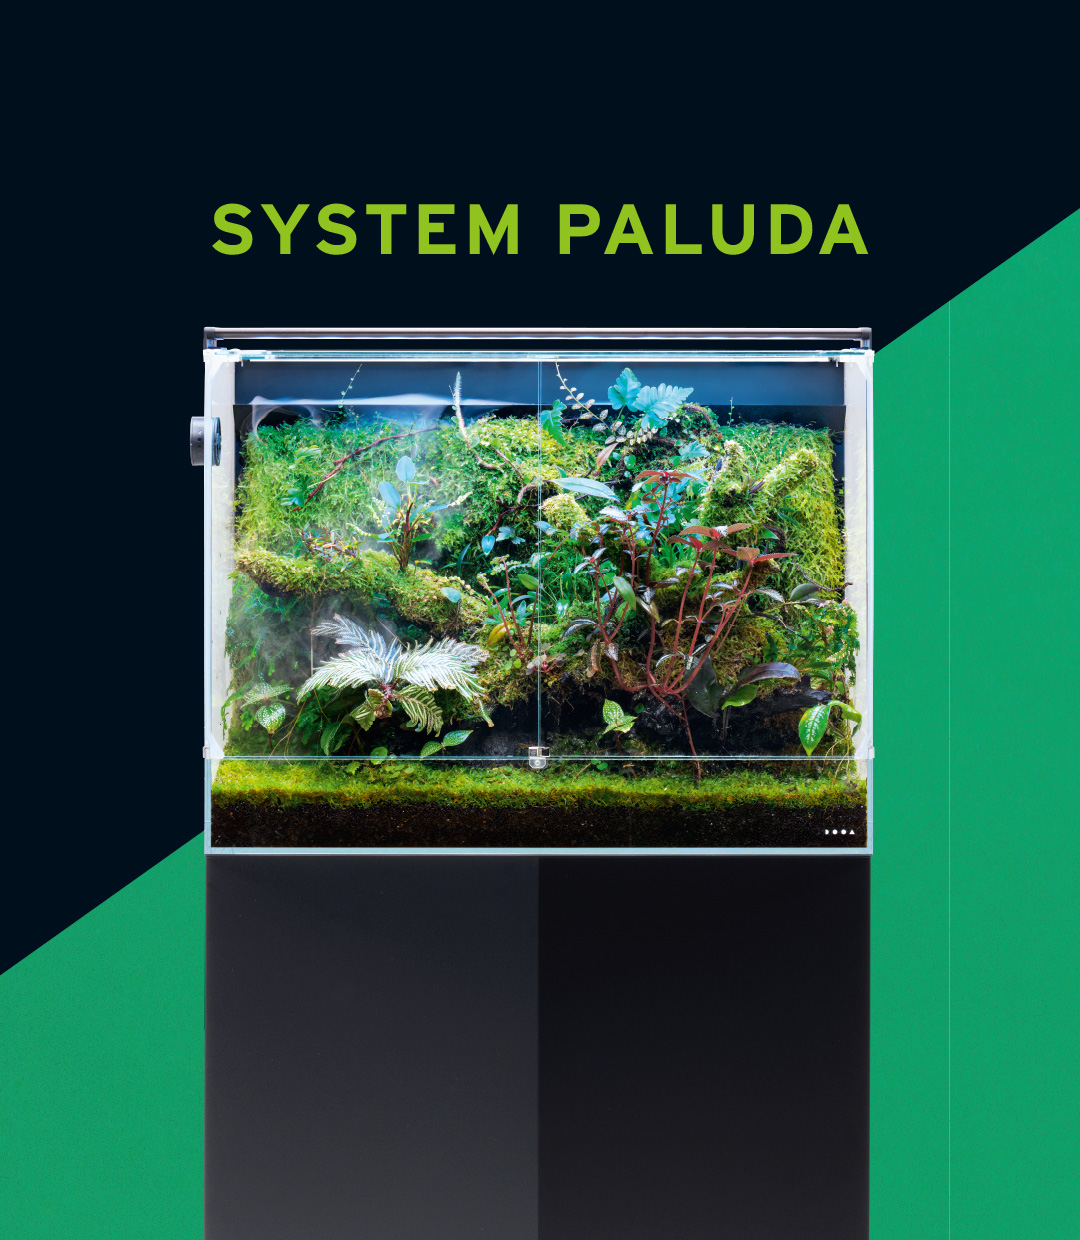 SYSTEM PALUDA 60「青い光と霧で 熱帯雲霧林の環境を再現」